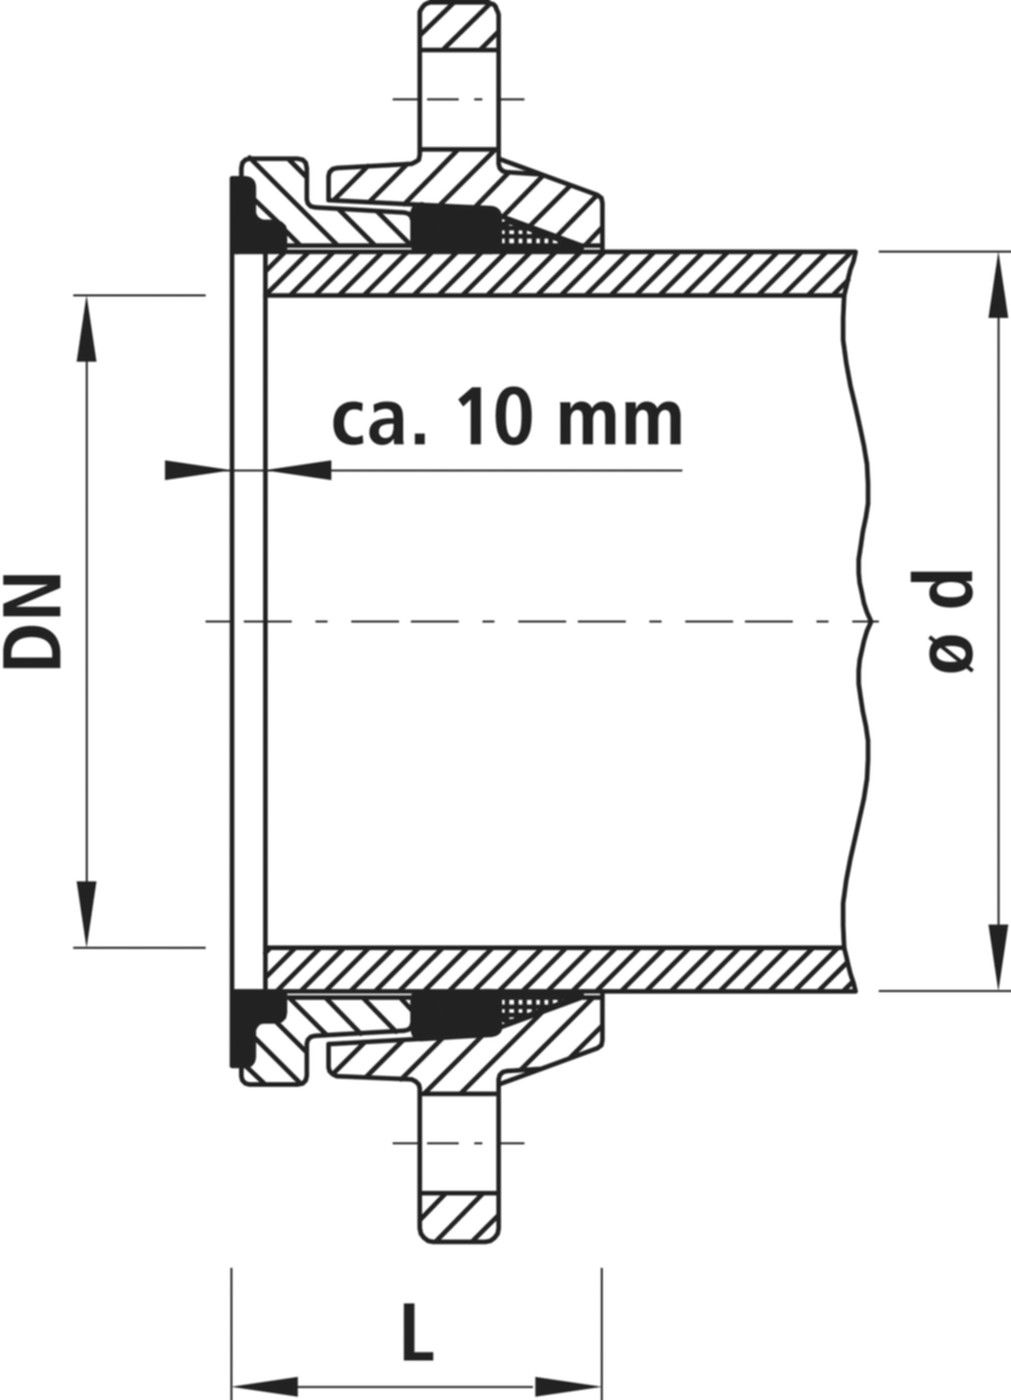 Zweikammer-Flansch für Stahlrohre 7150 schubsicher, PN 10/16 DN 150 / AD 159mm - Hawle Flanschformstücke